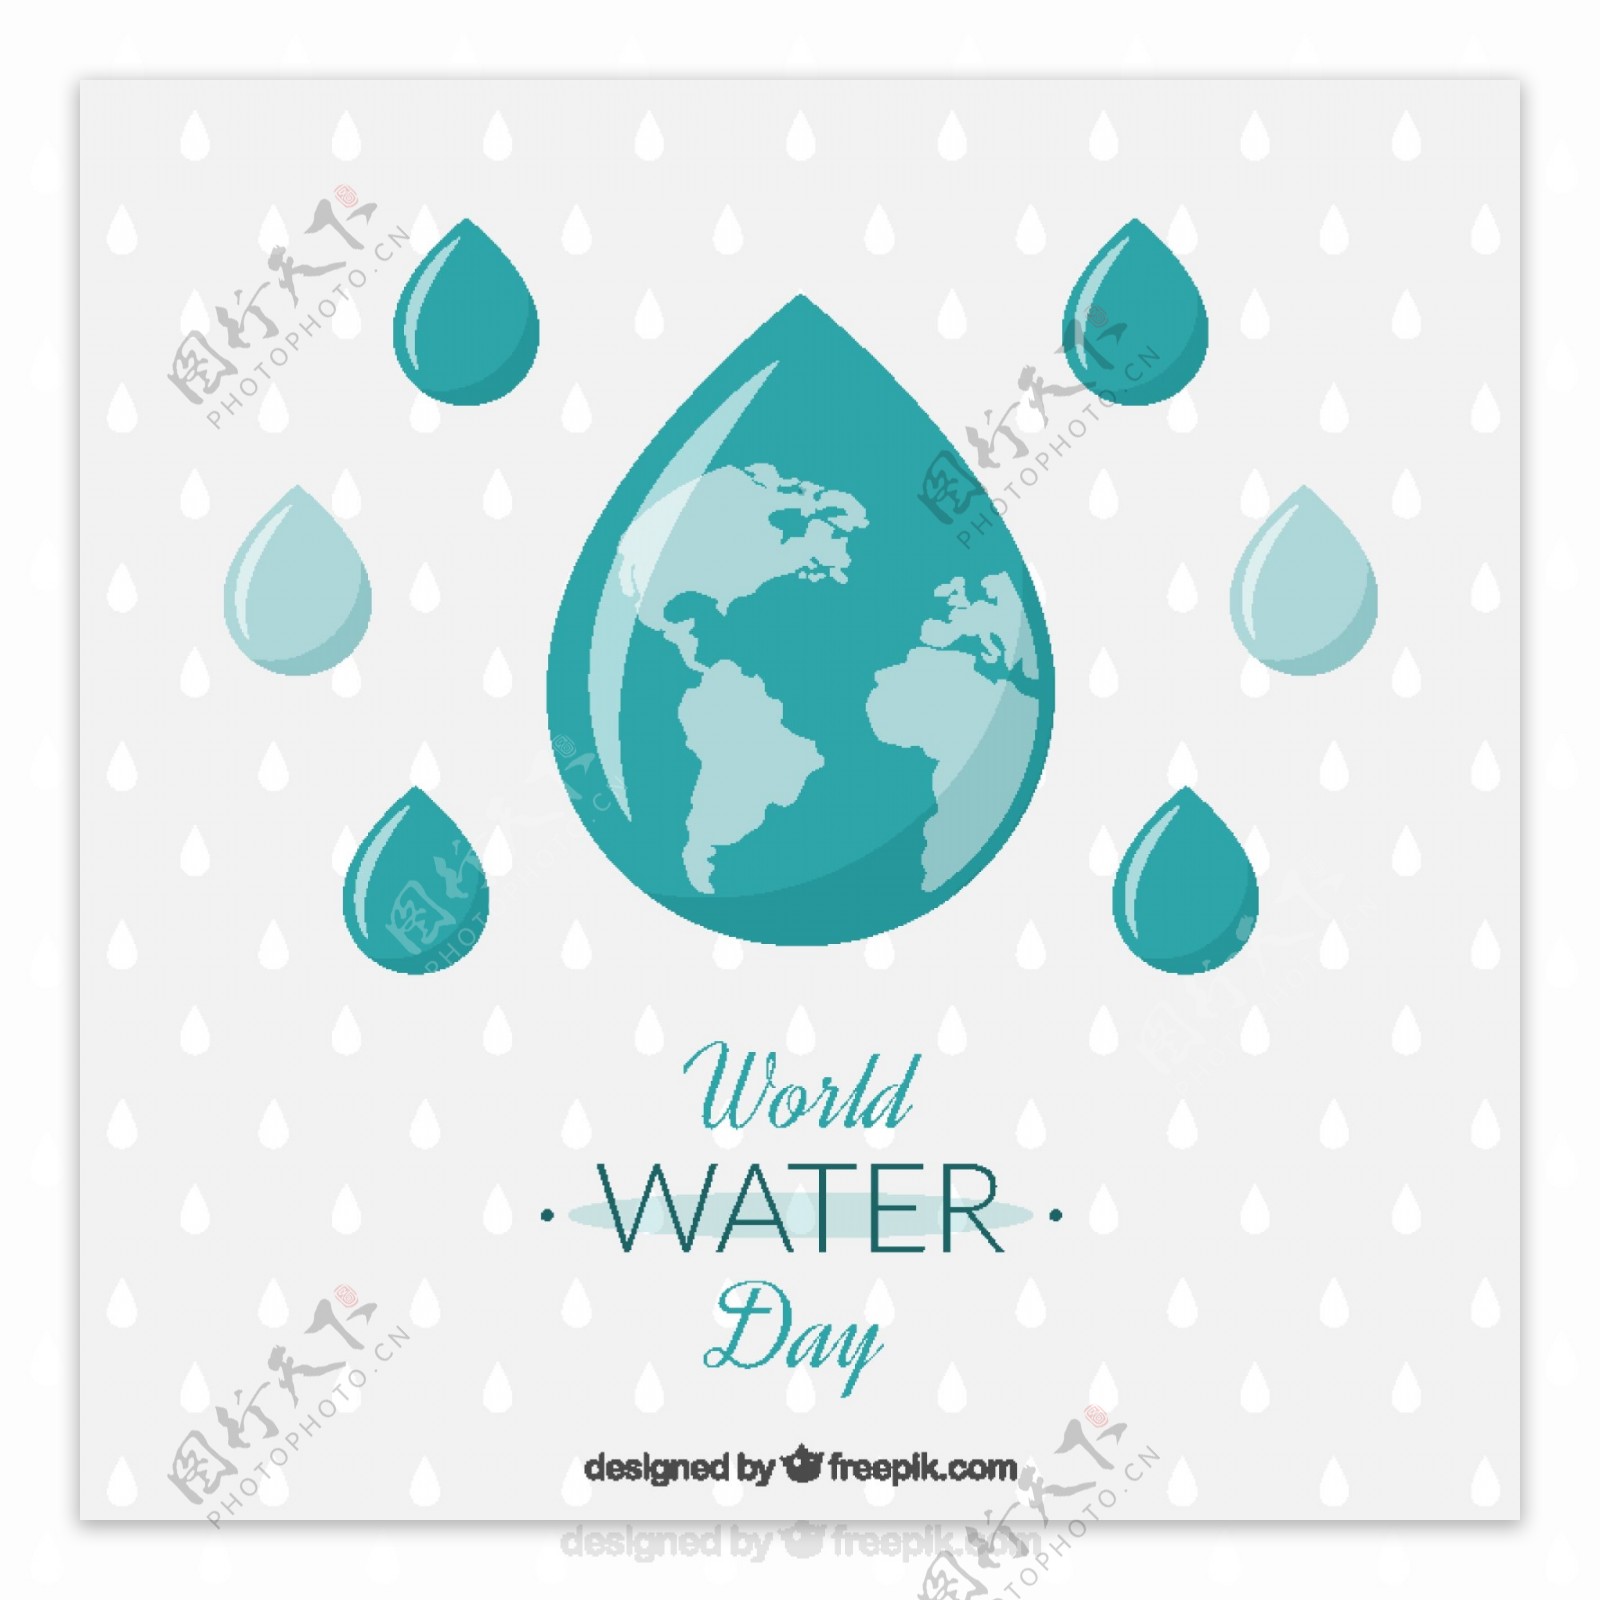 滴世界一天的水